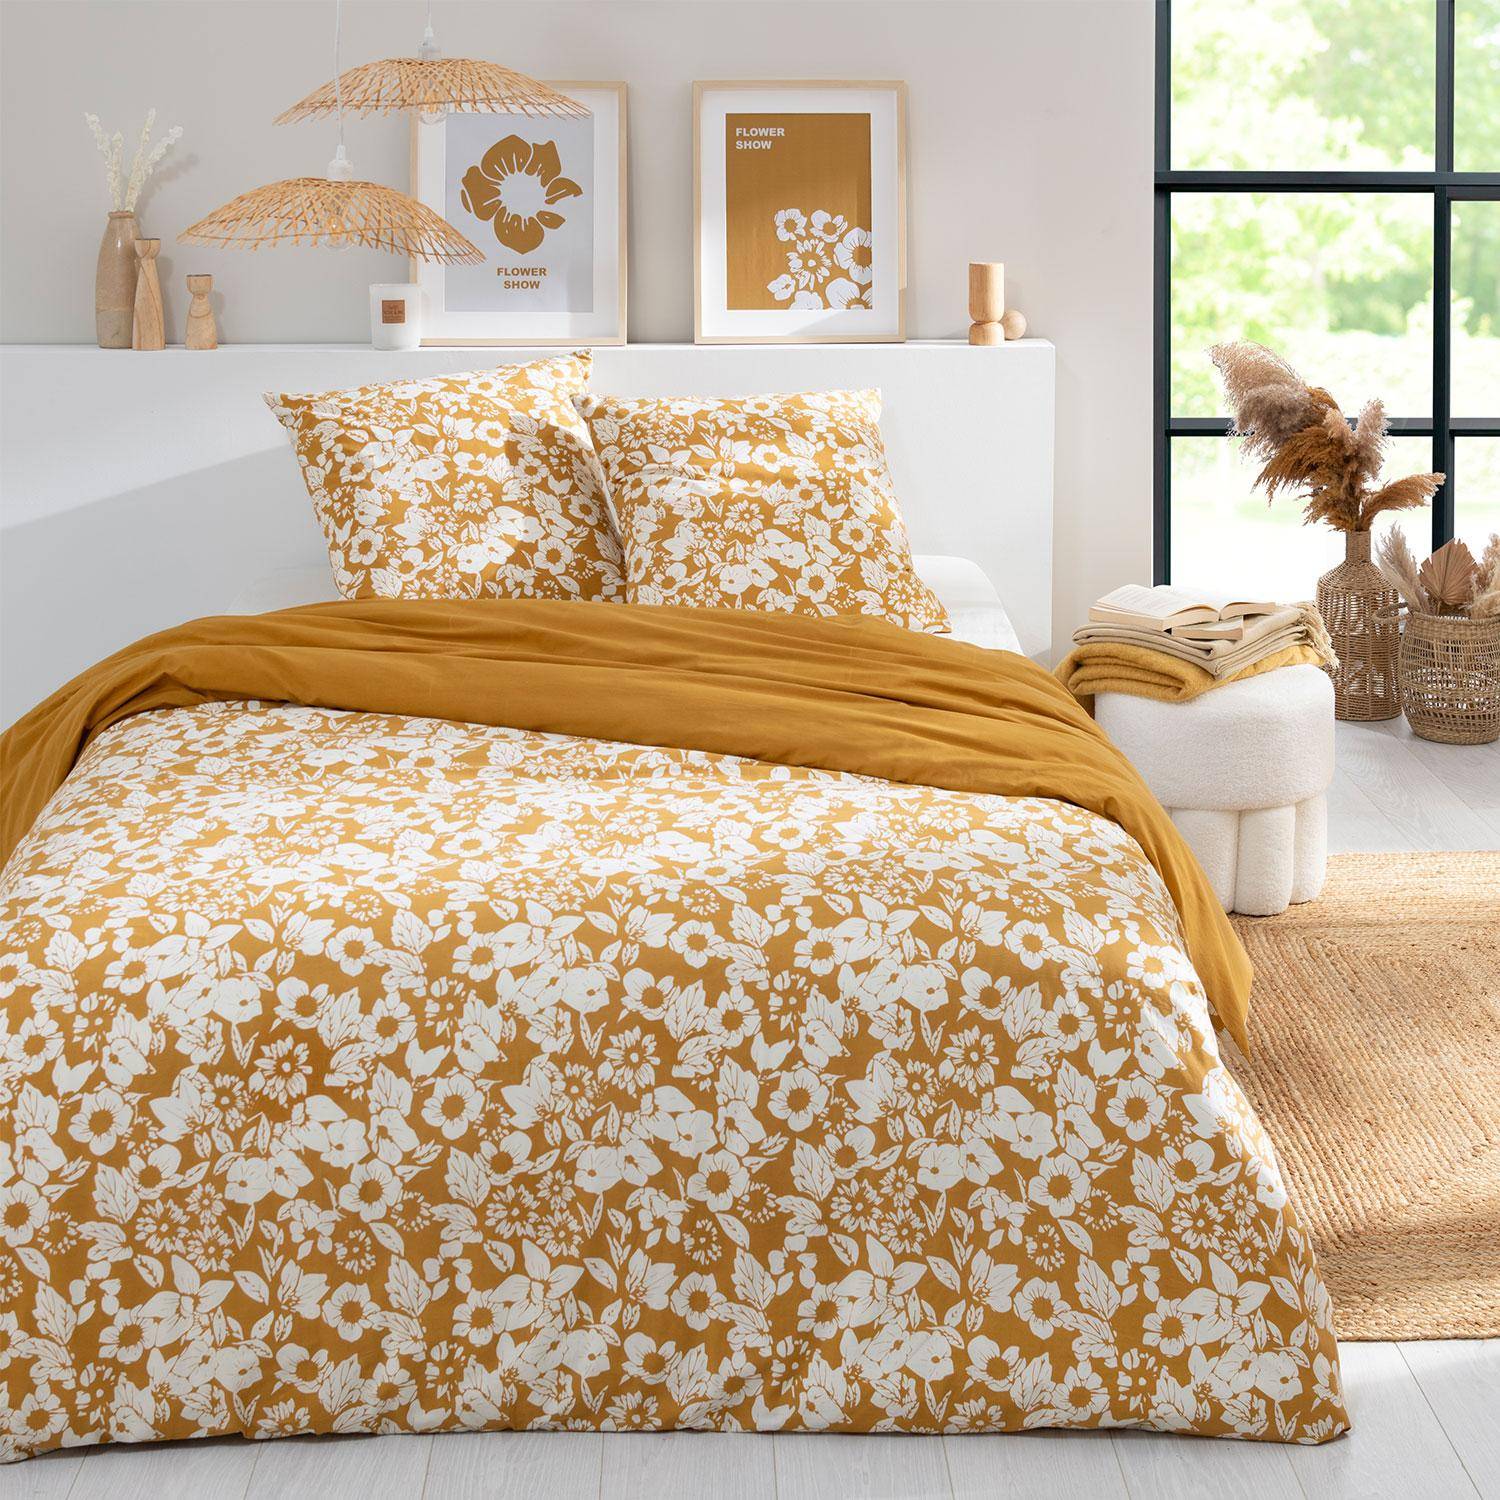 Parure de lit réversible 260x240cm imprimé floral moutarde et blanc en coton  Photo1